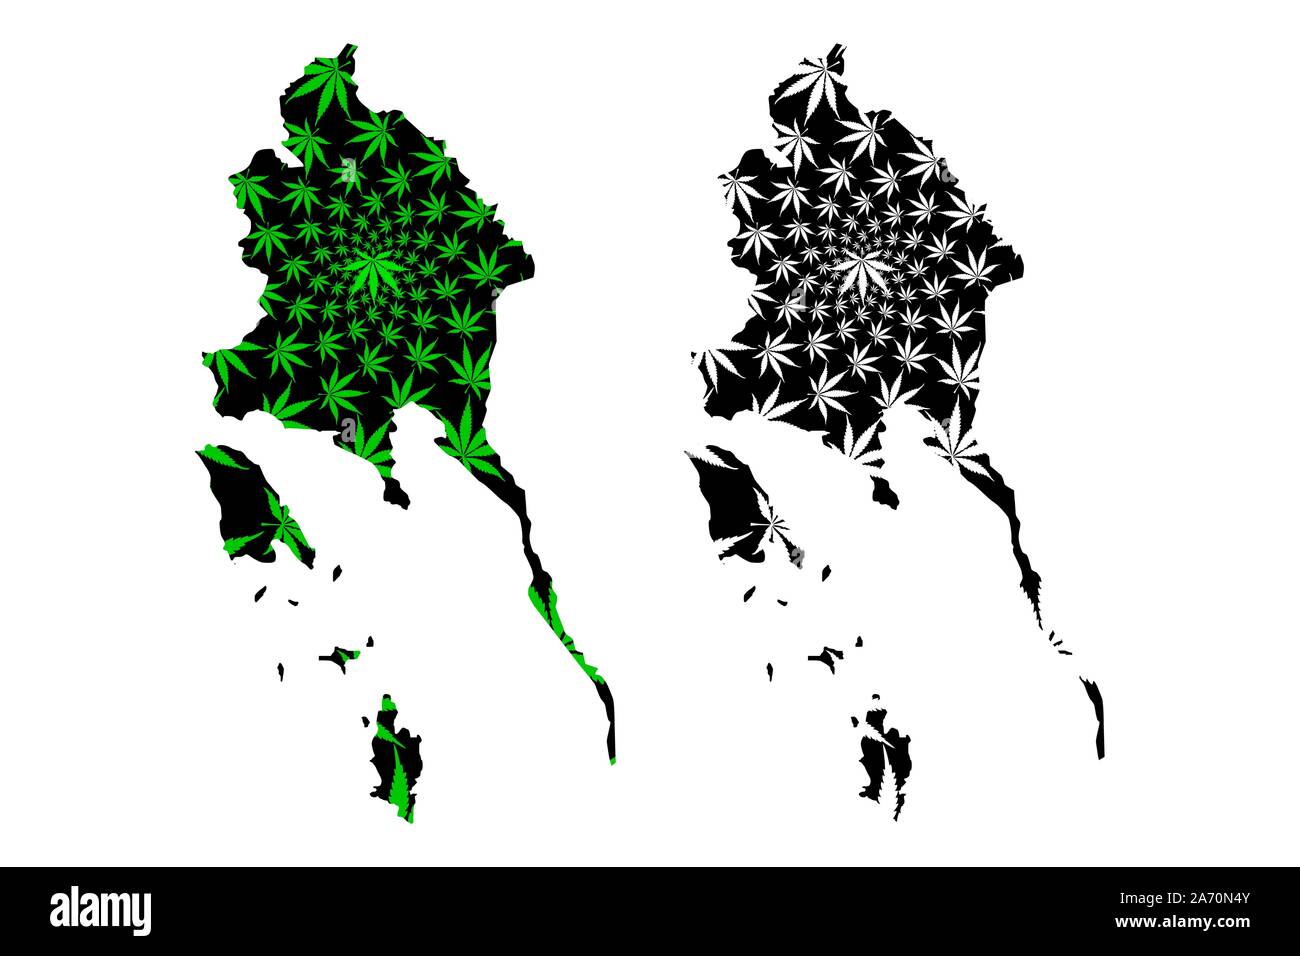 La province de Trat (Royaume de Thaïlande, Siam, Provinces de la Thaïlande) la carte est conçue de feuilles de cannabis vert et noir, Trat carte de marijuana, Illustration de Vecteur